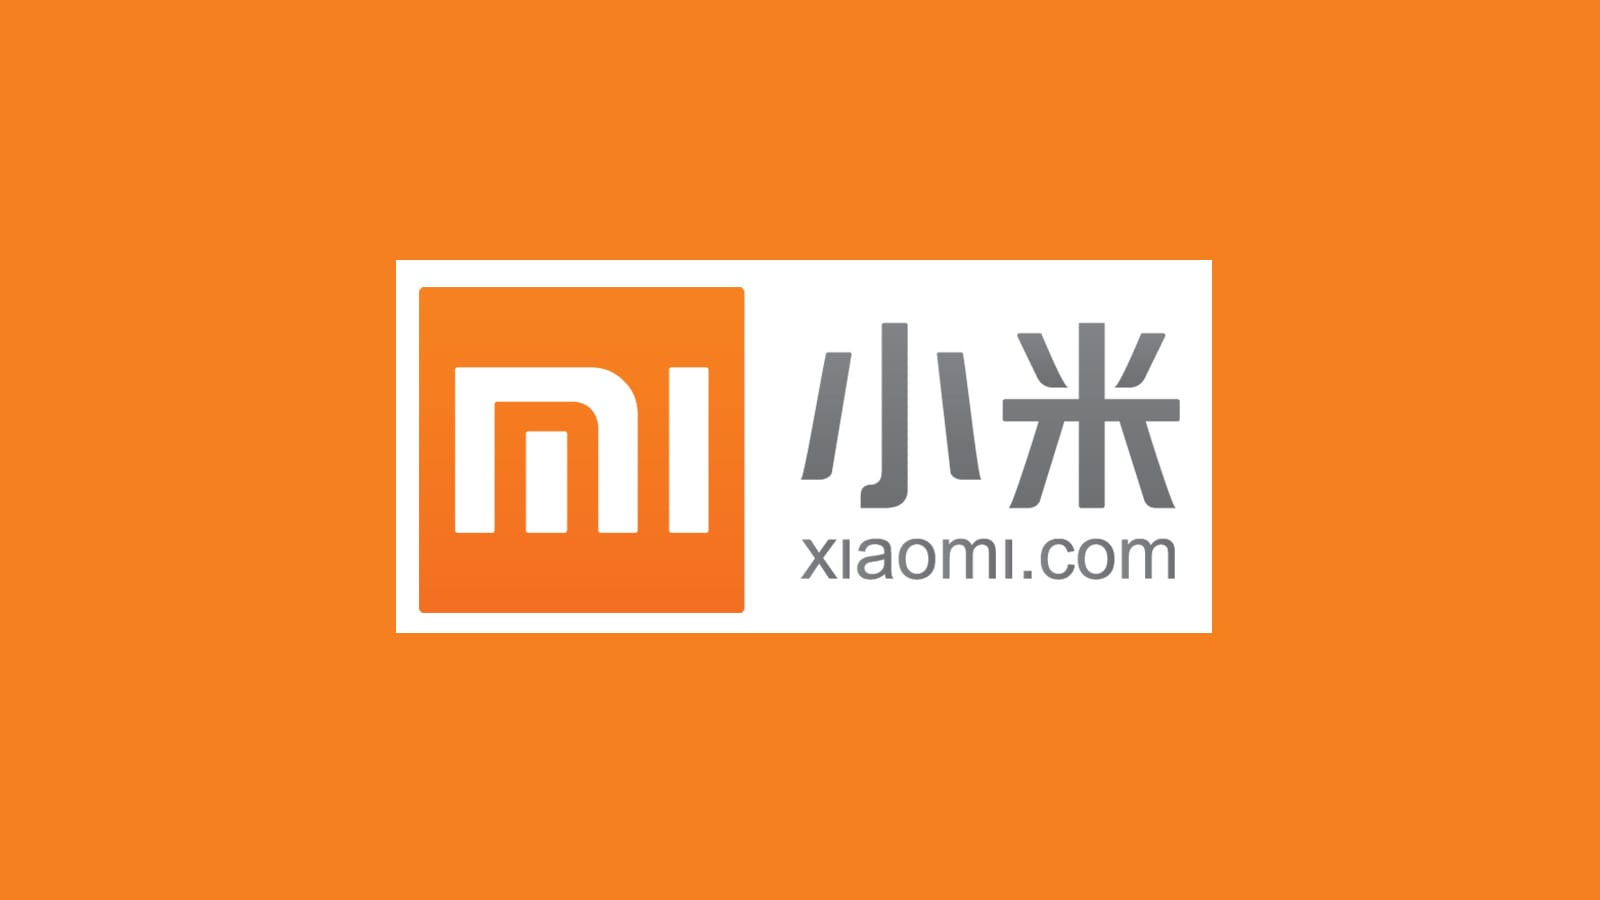 يبدو أن Xiaomi تسجل أنشطة تصفح الويب الخاصة للمستخدمين 87